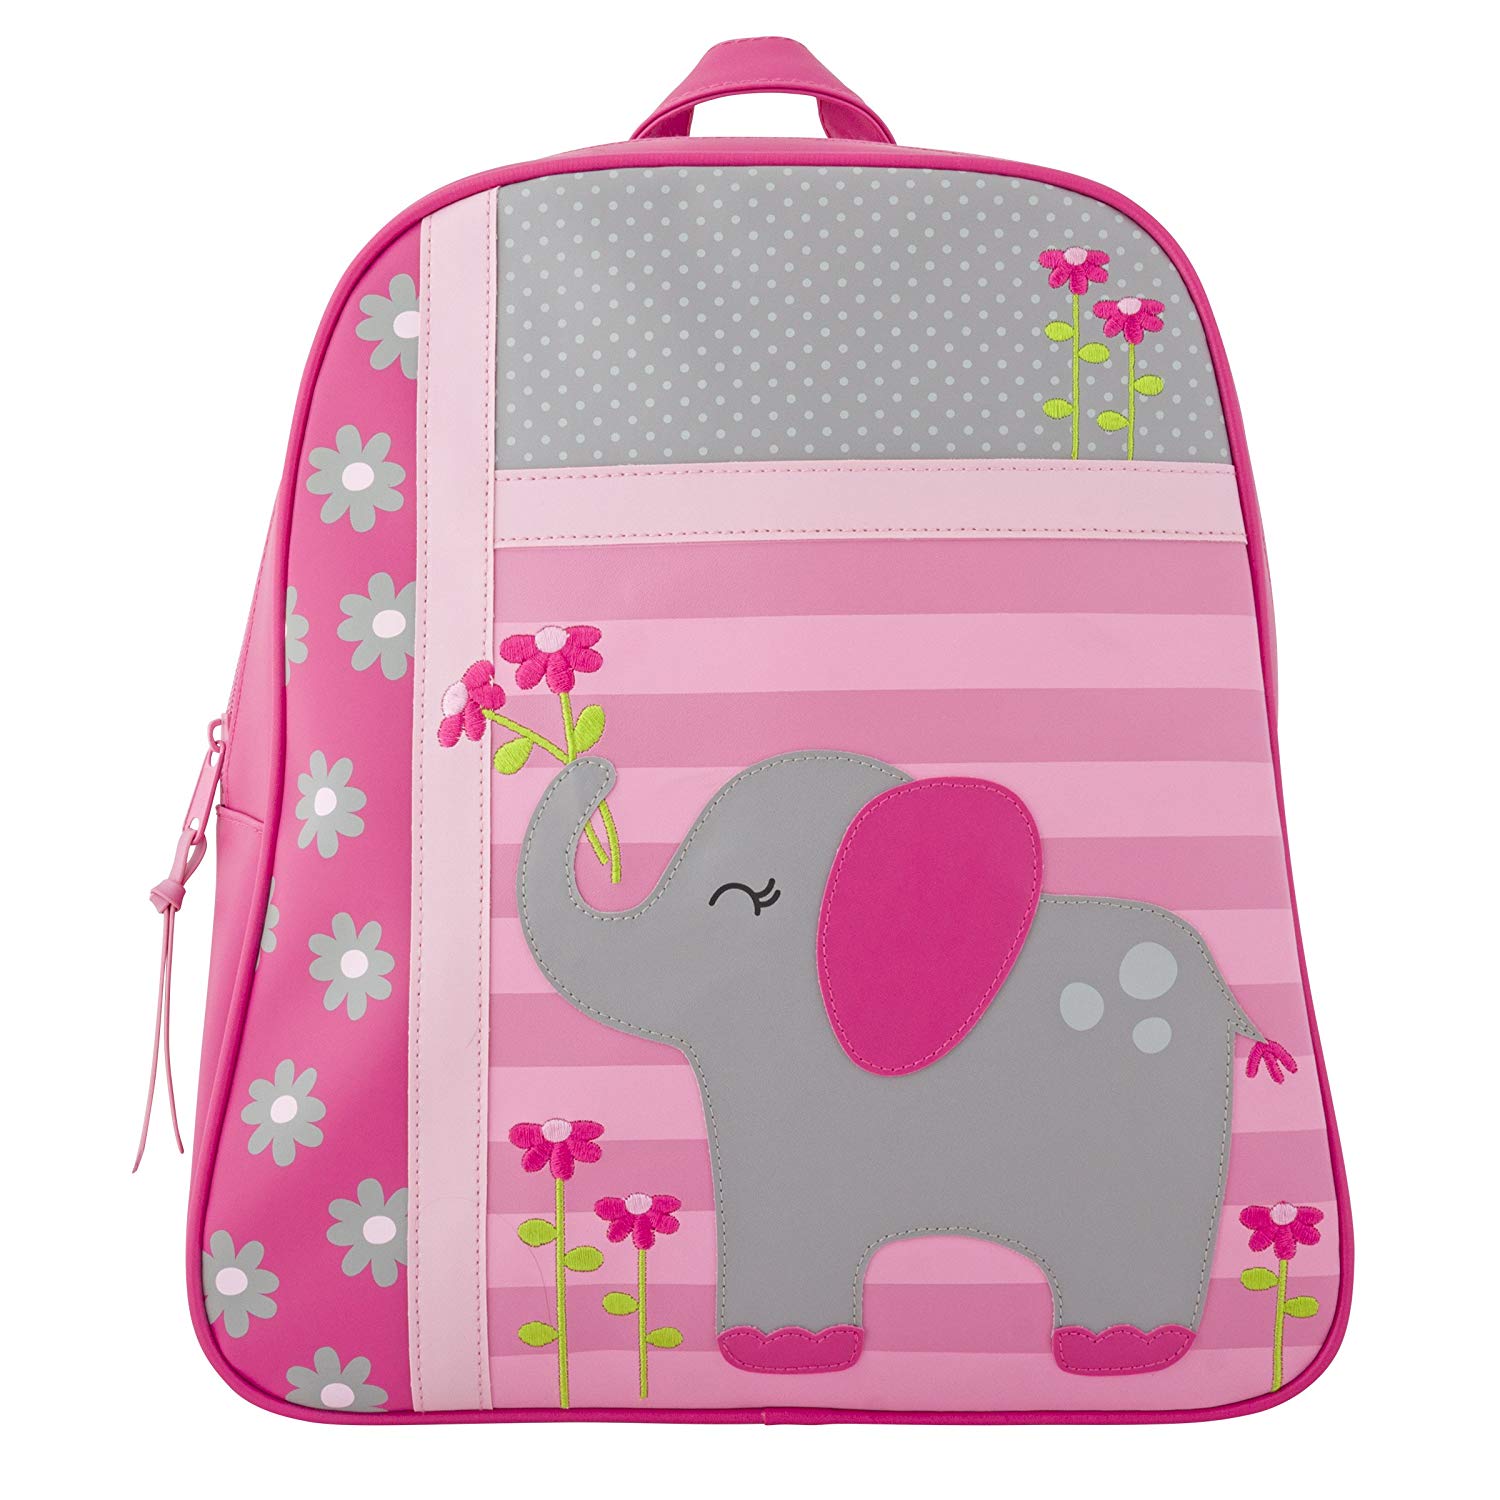 Stephen Joseph Children’s Toddler Rucksack – Elephant Backpack, 34 cm ...